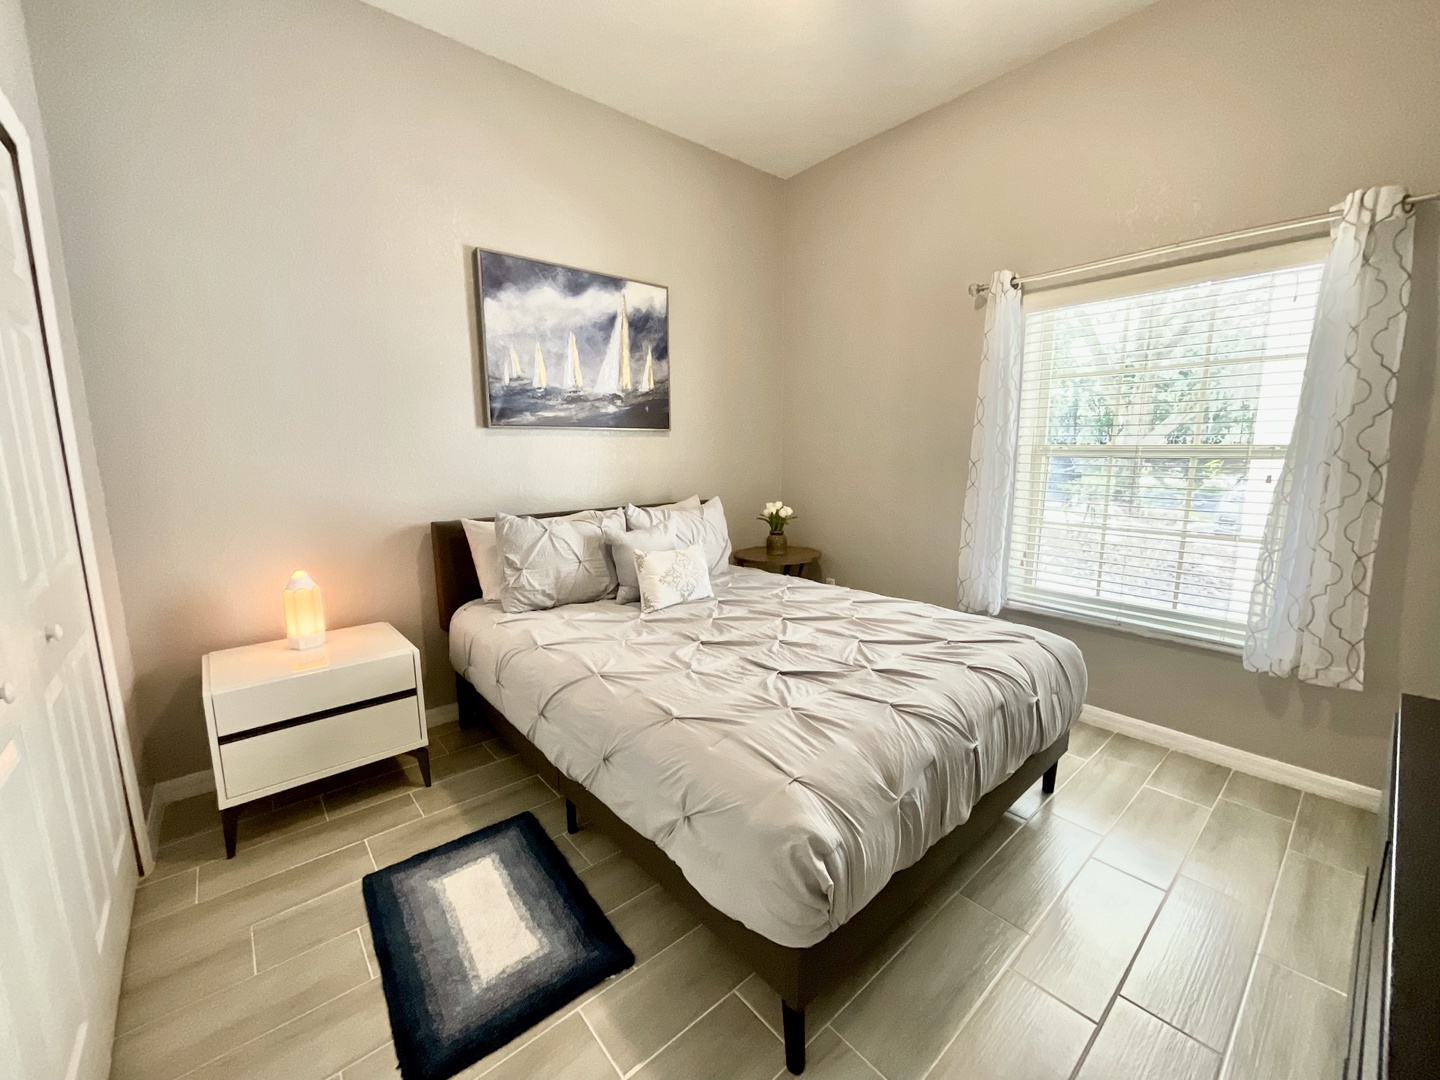 The final bedroom offers a cozy queen bed & Smart TV